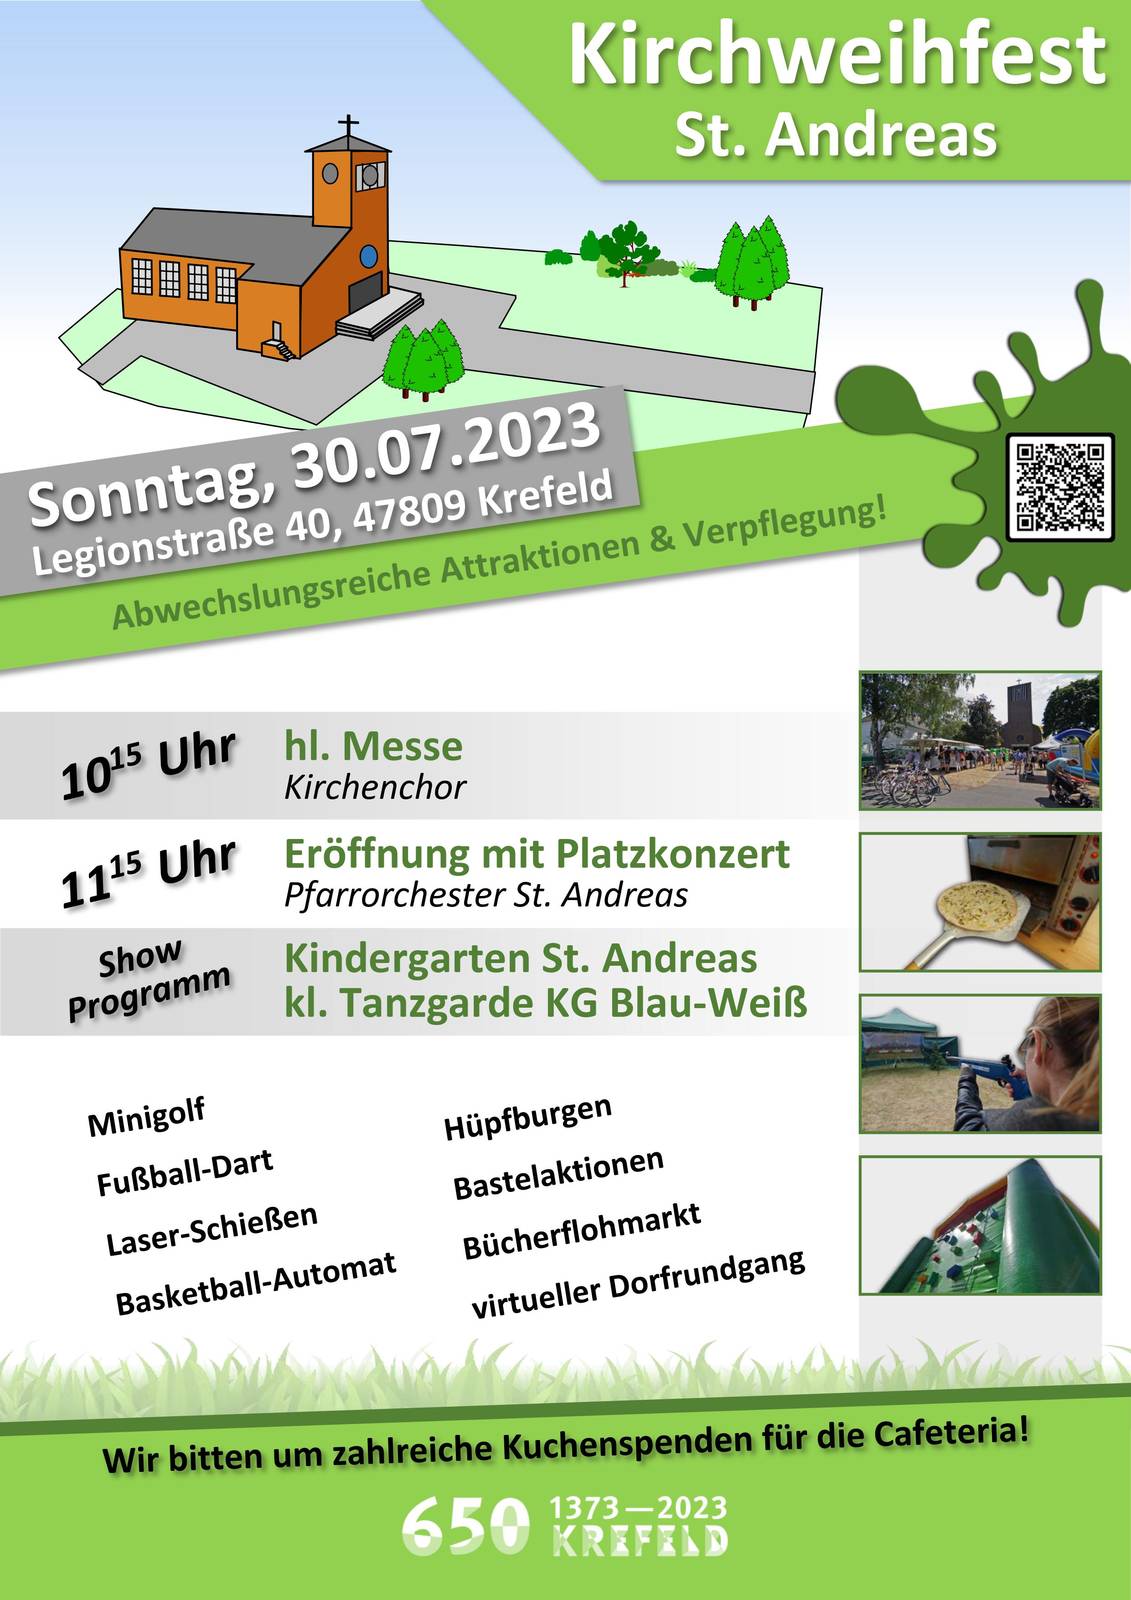 28.06.2023: Plakat grün, weiß, grau, Kirchweihfest mit Grafik der Kirche, Termin, Adresse und die Aktionen des Tages